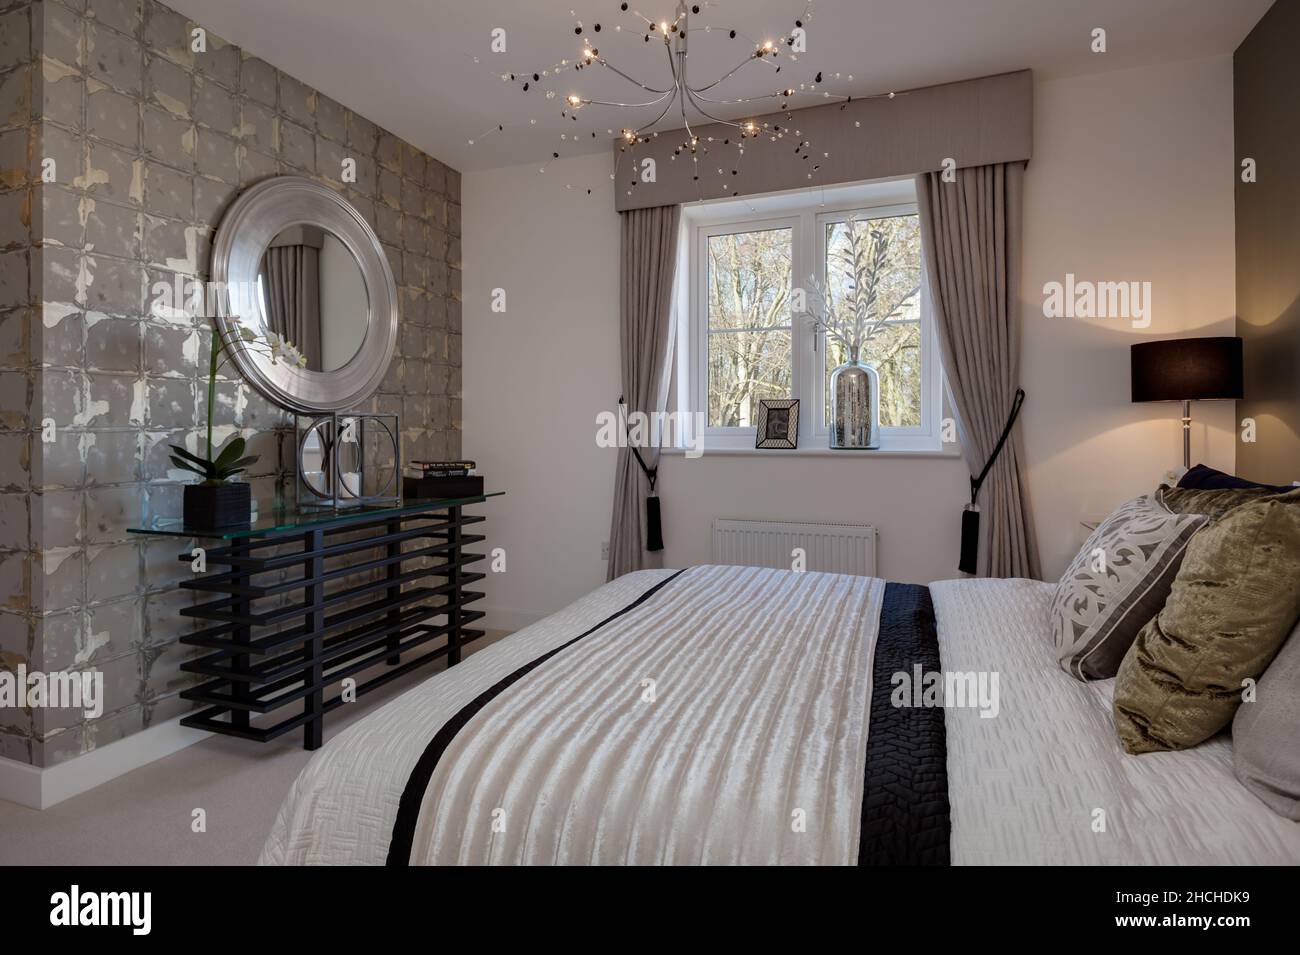 Kentford, Suffolk, England - Feb 25 2016: Modernes, nagelneues Zuhause mit moderner Schlafzimmereinrichtung inklusive Doppelbett, Sidetable mit Spiegel abov Stockfoto